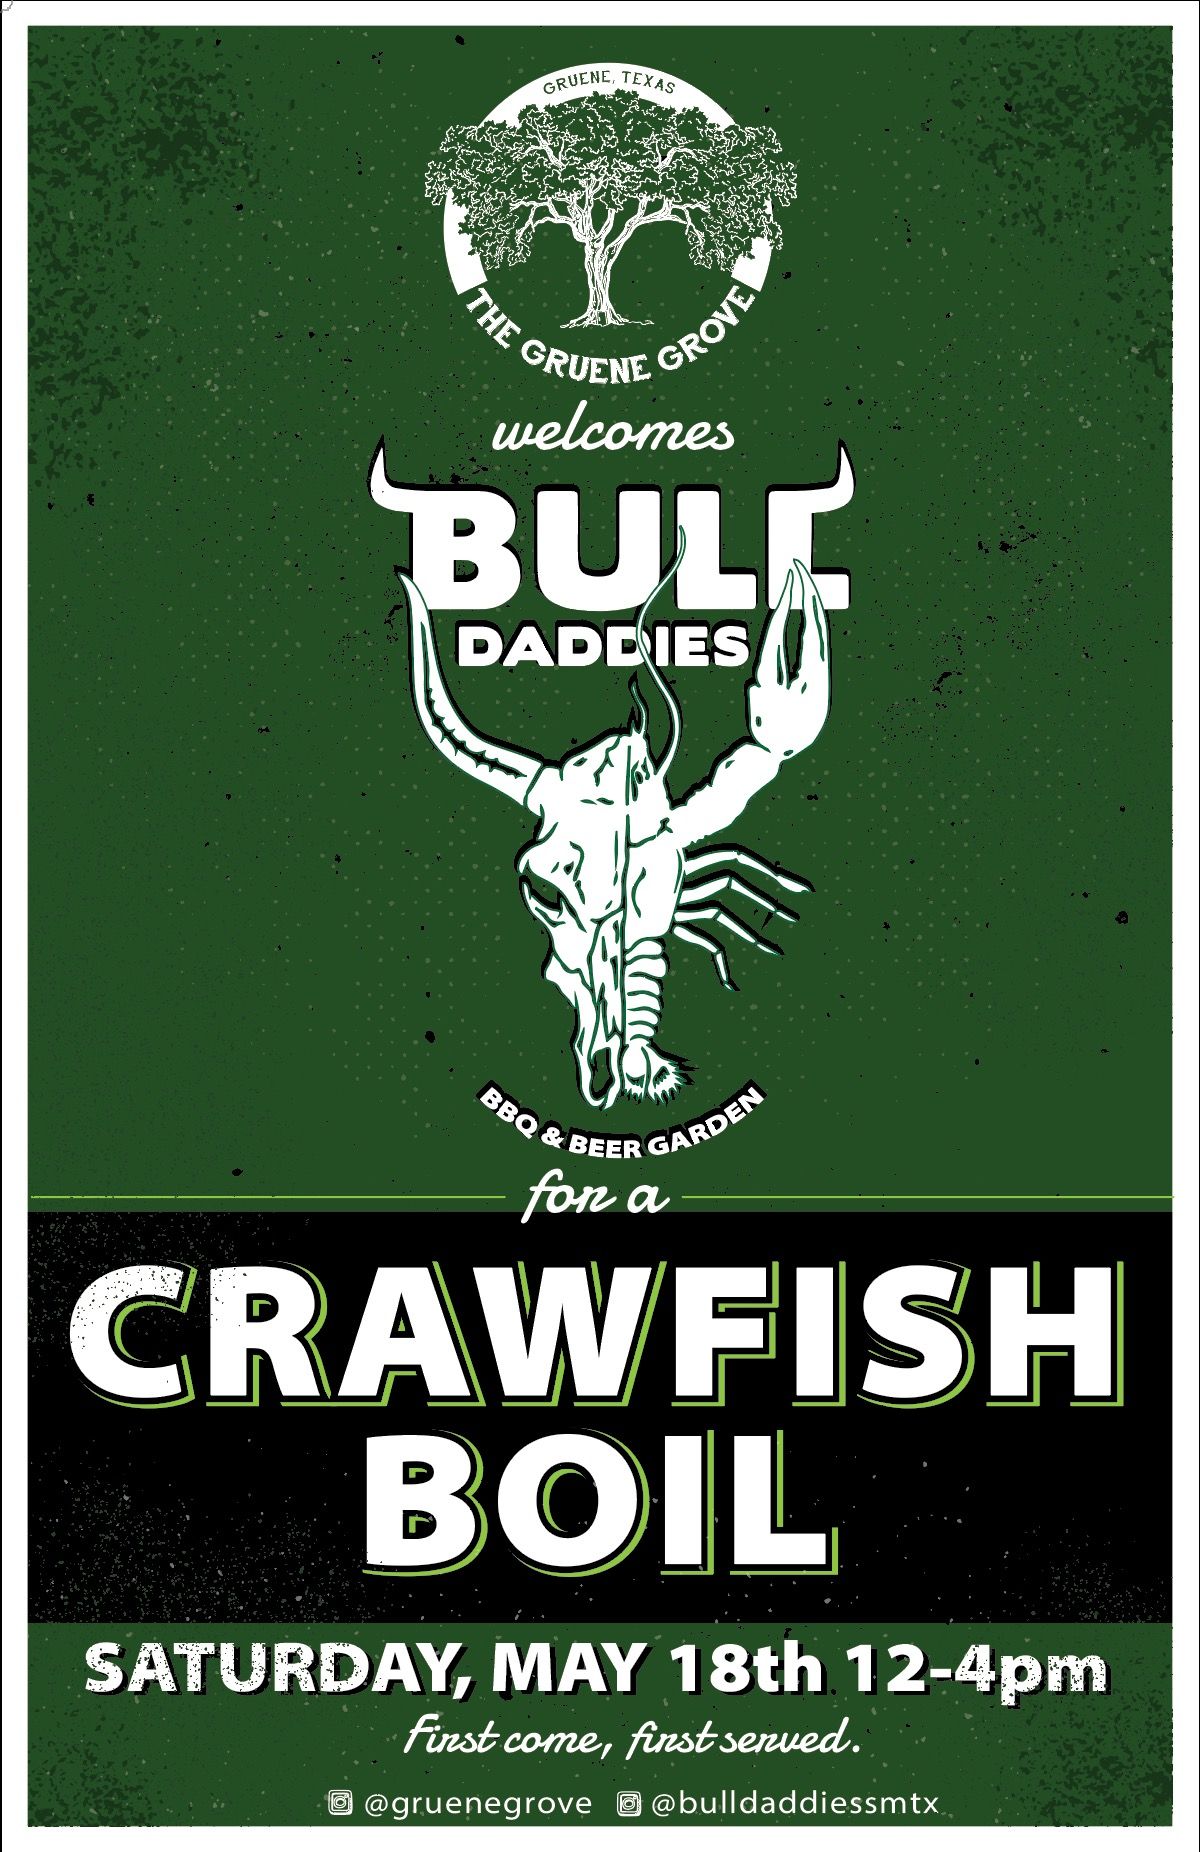 CRAWFISH BOIL @ Gruene Grove ft. Bull Daddies